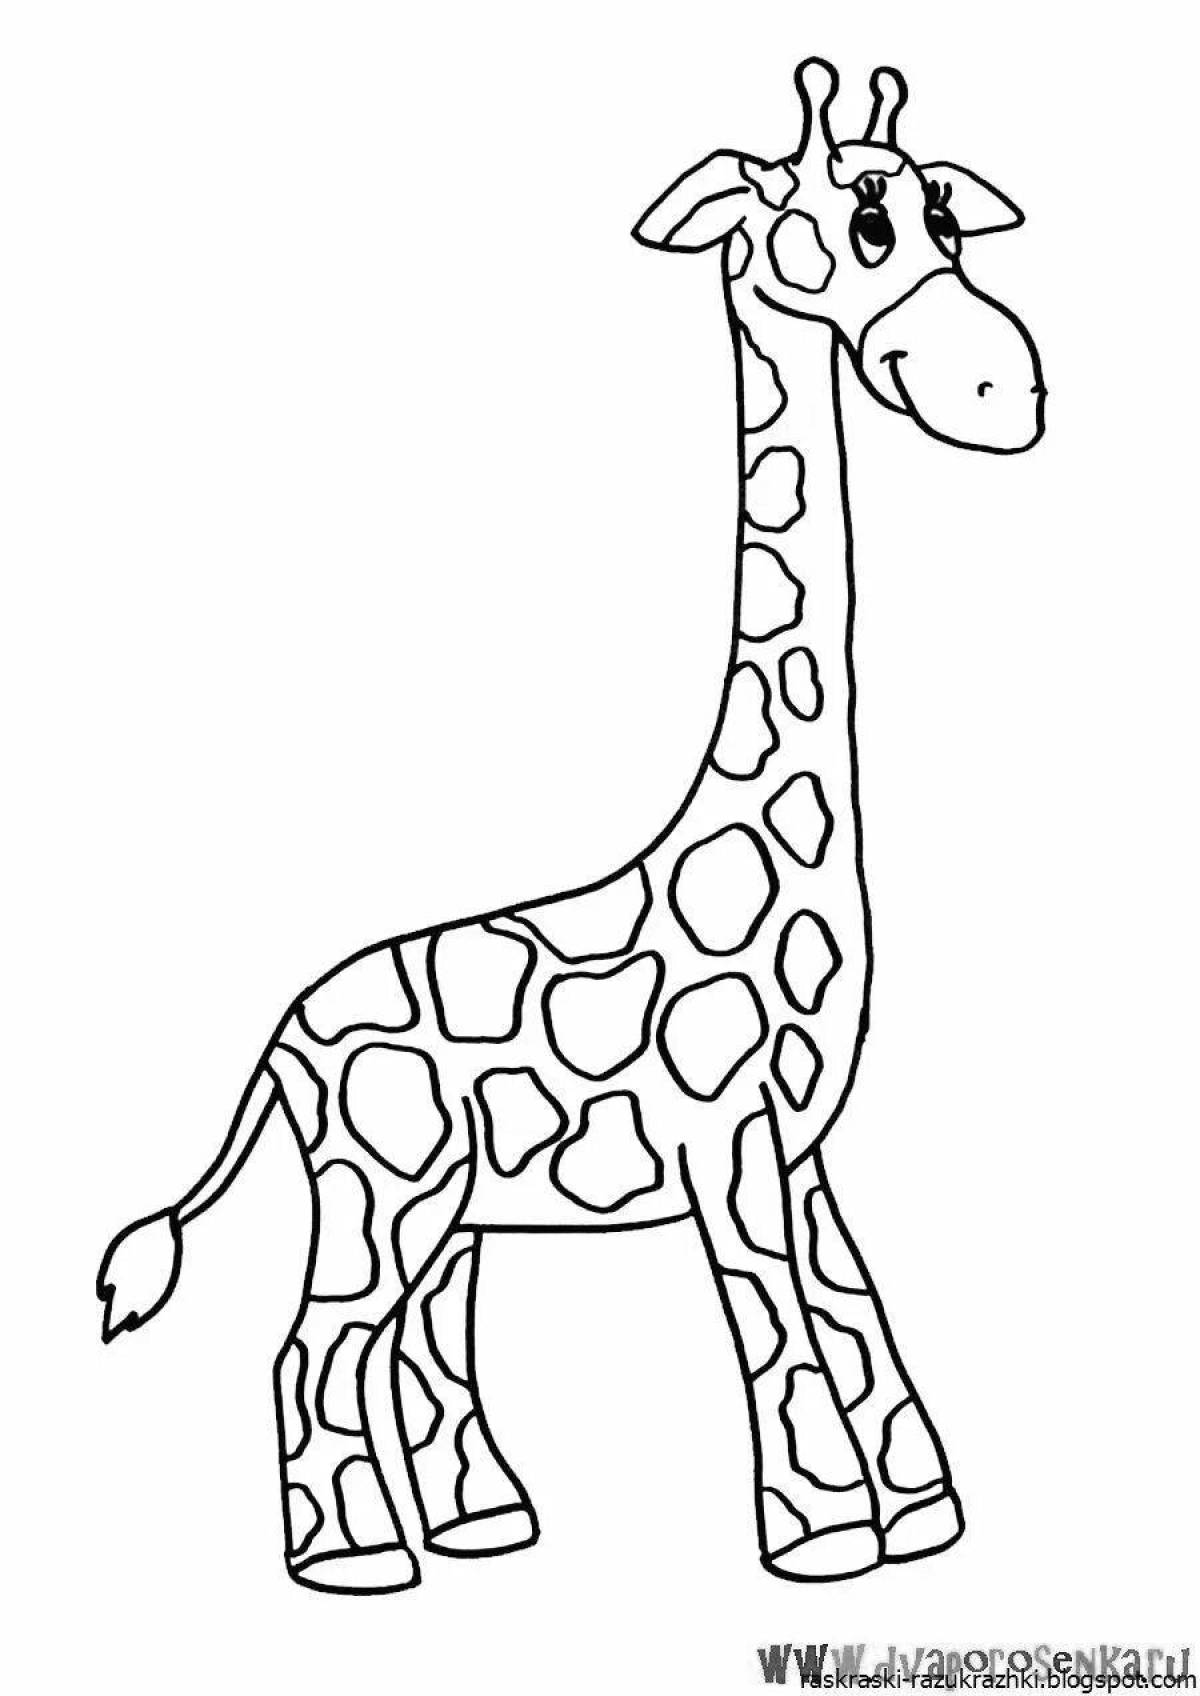 Потрясающие раскраски с жирафами для детей